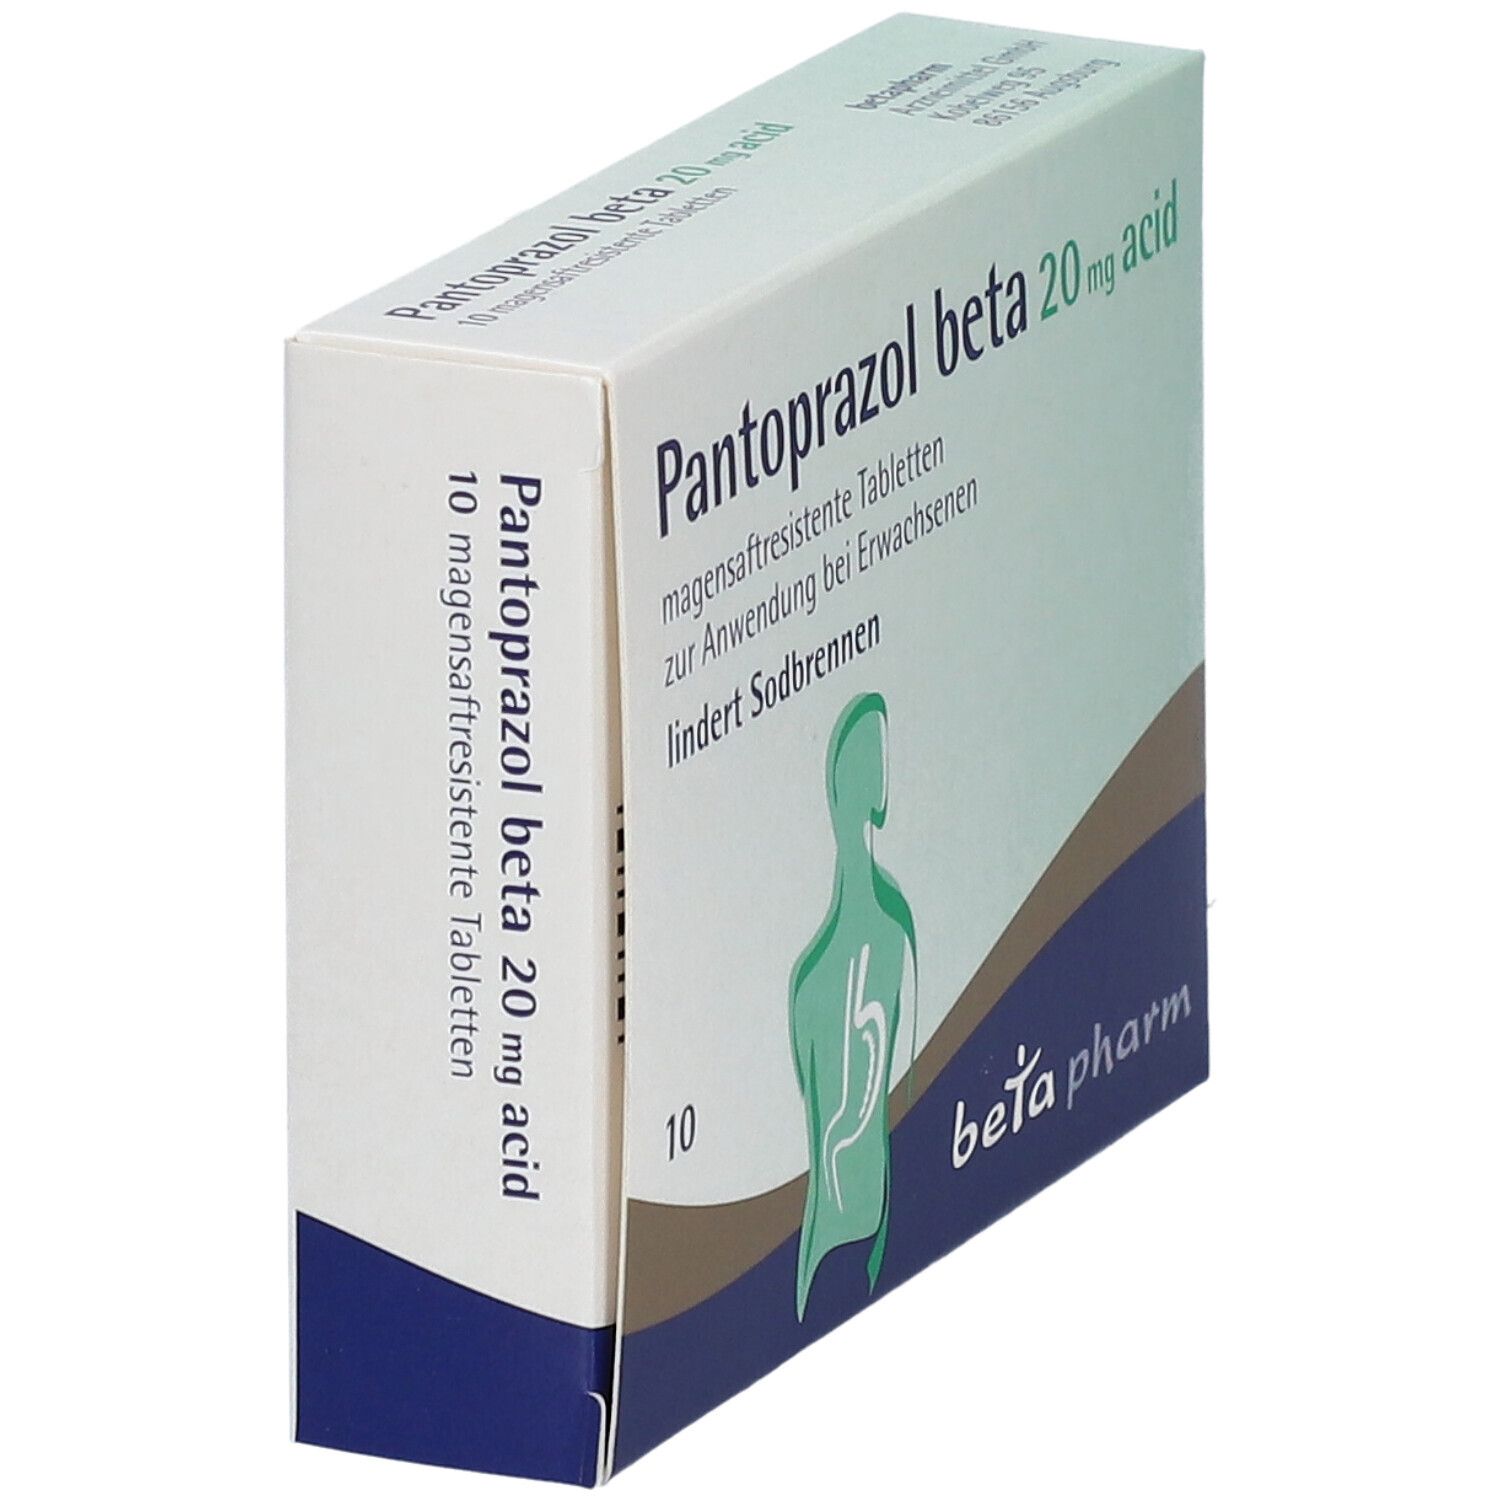 PANTOPRAZOL beta 20 mg acid